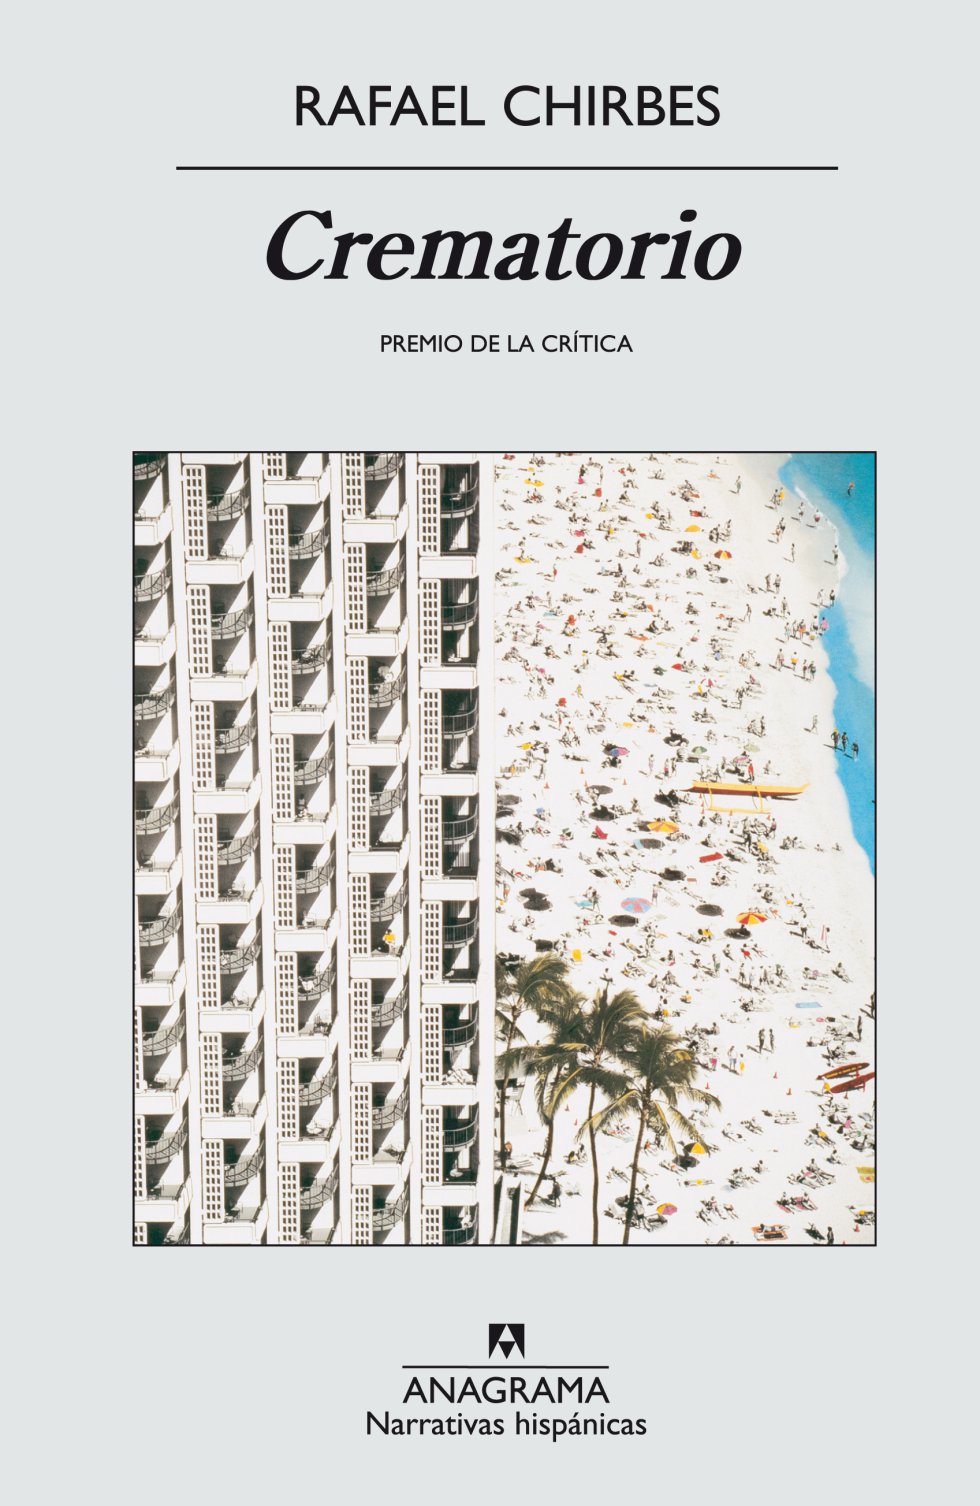 Si las últimas novelas de Rafael Chirbes son una síntesis entre literatura social y literatura experimental, 'Crematorio' es el retrato perfecto de la España del pelotazo inmobiliario. Un año después de su publicación llegó la crisis. J. RODRÍGUEZ MARCOS